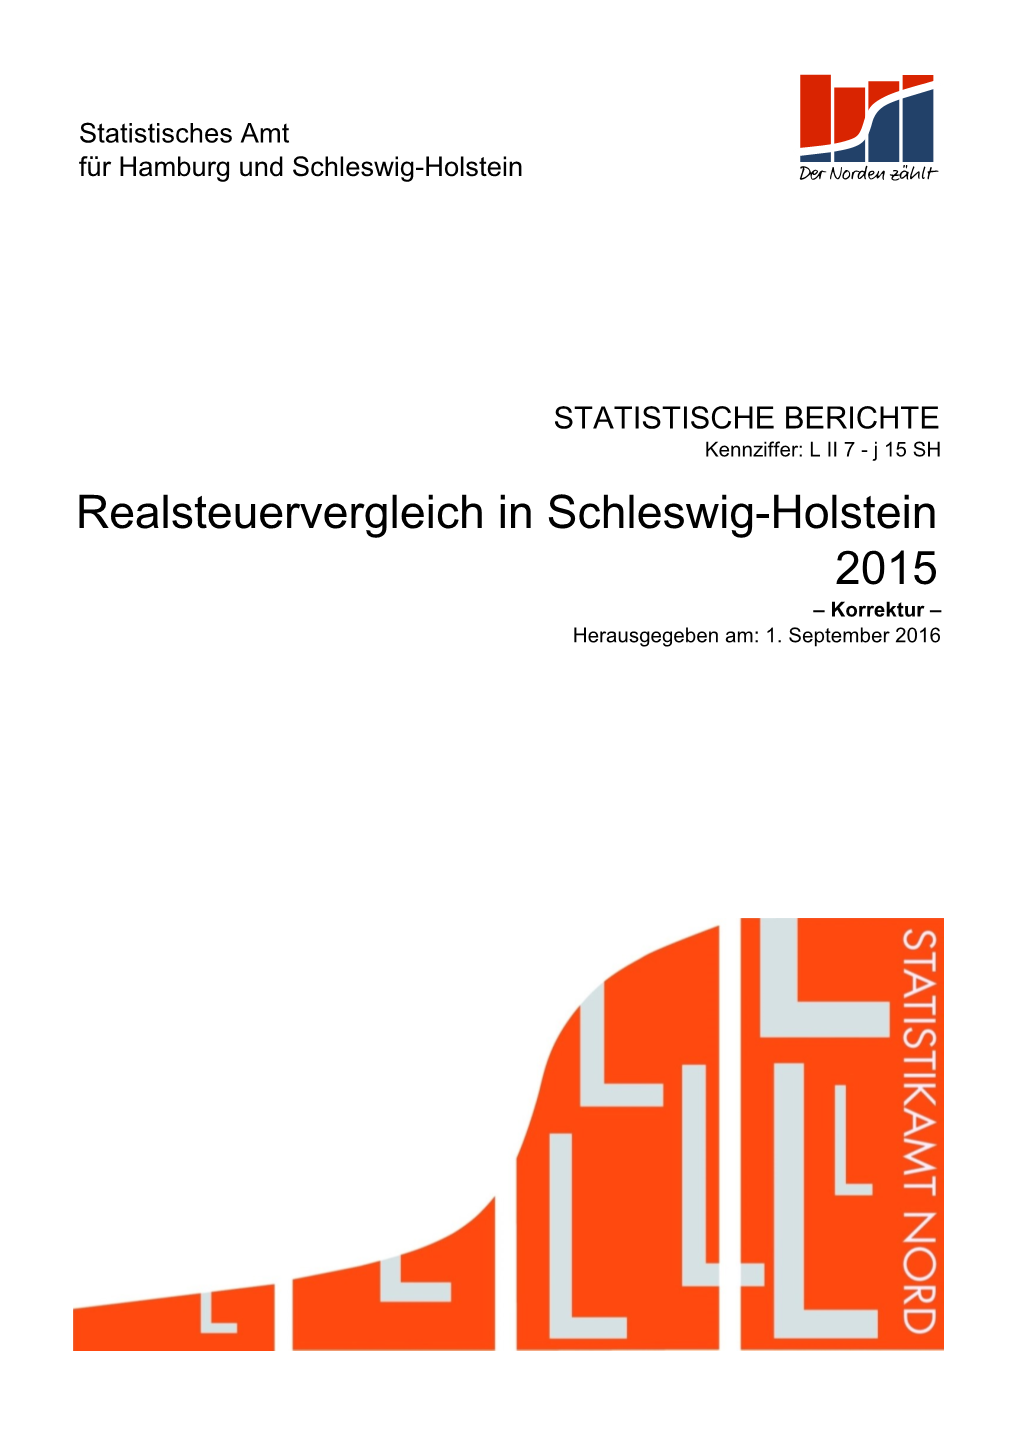 2015 Realsteuervergleich in Schleswig-Holstein